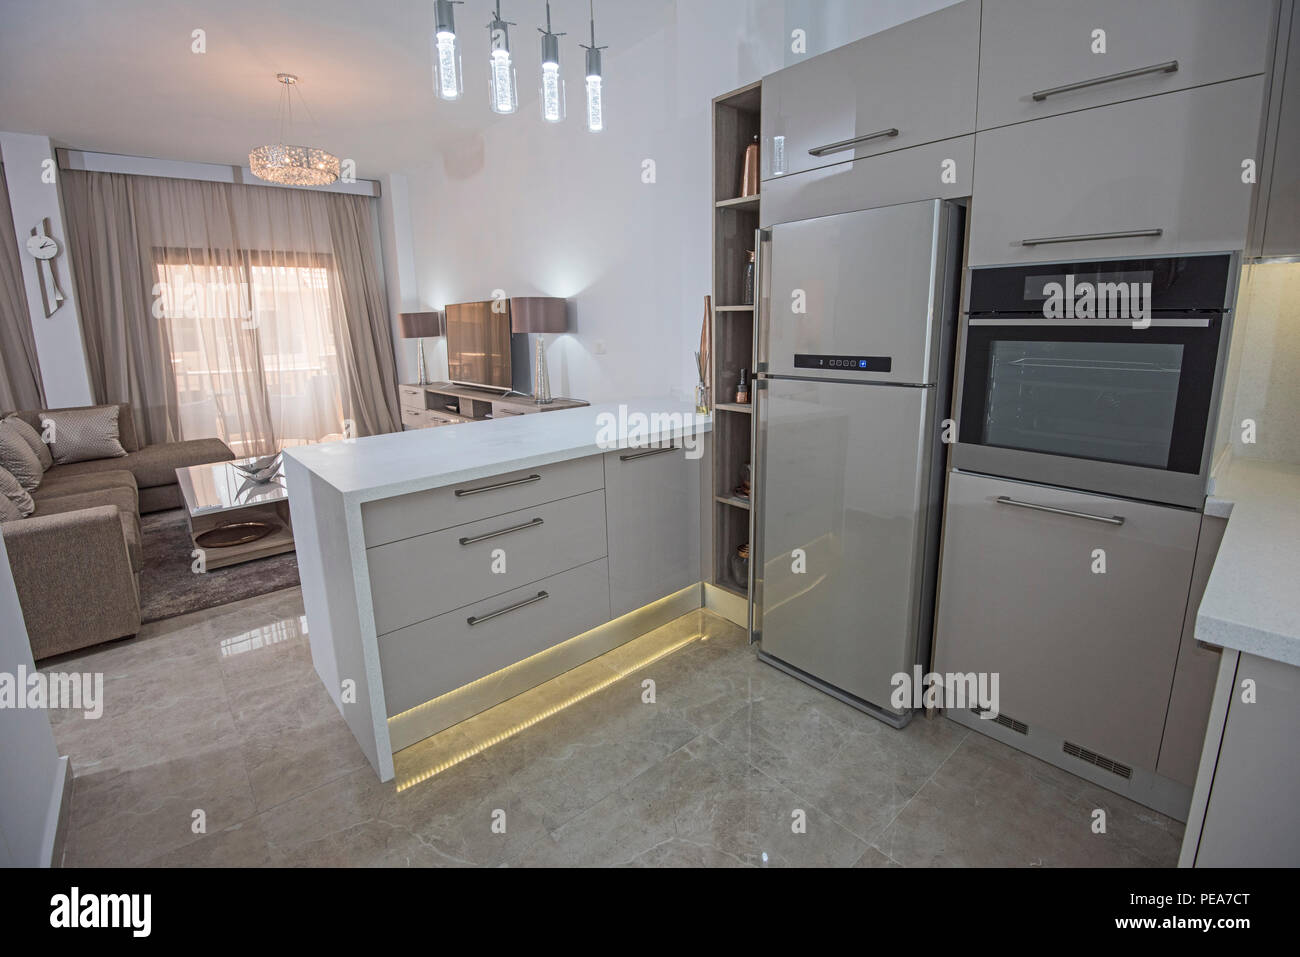 Interior Design Decor Showing Modern Kitchen And Appliances